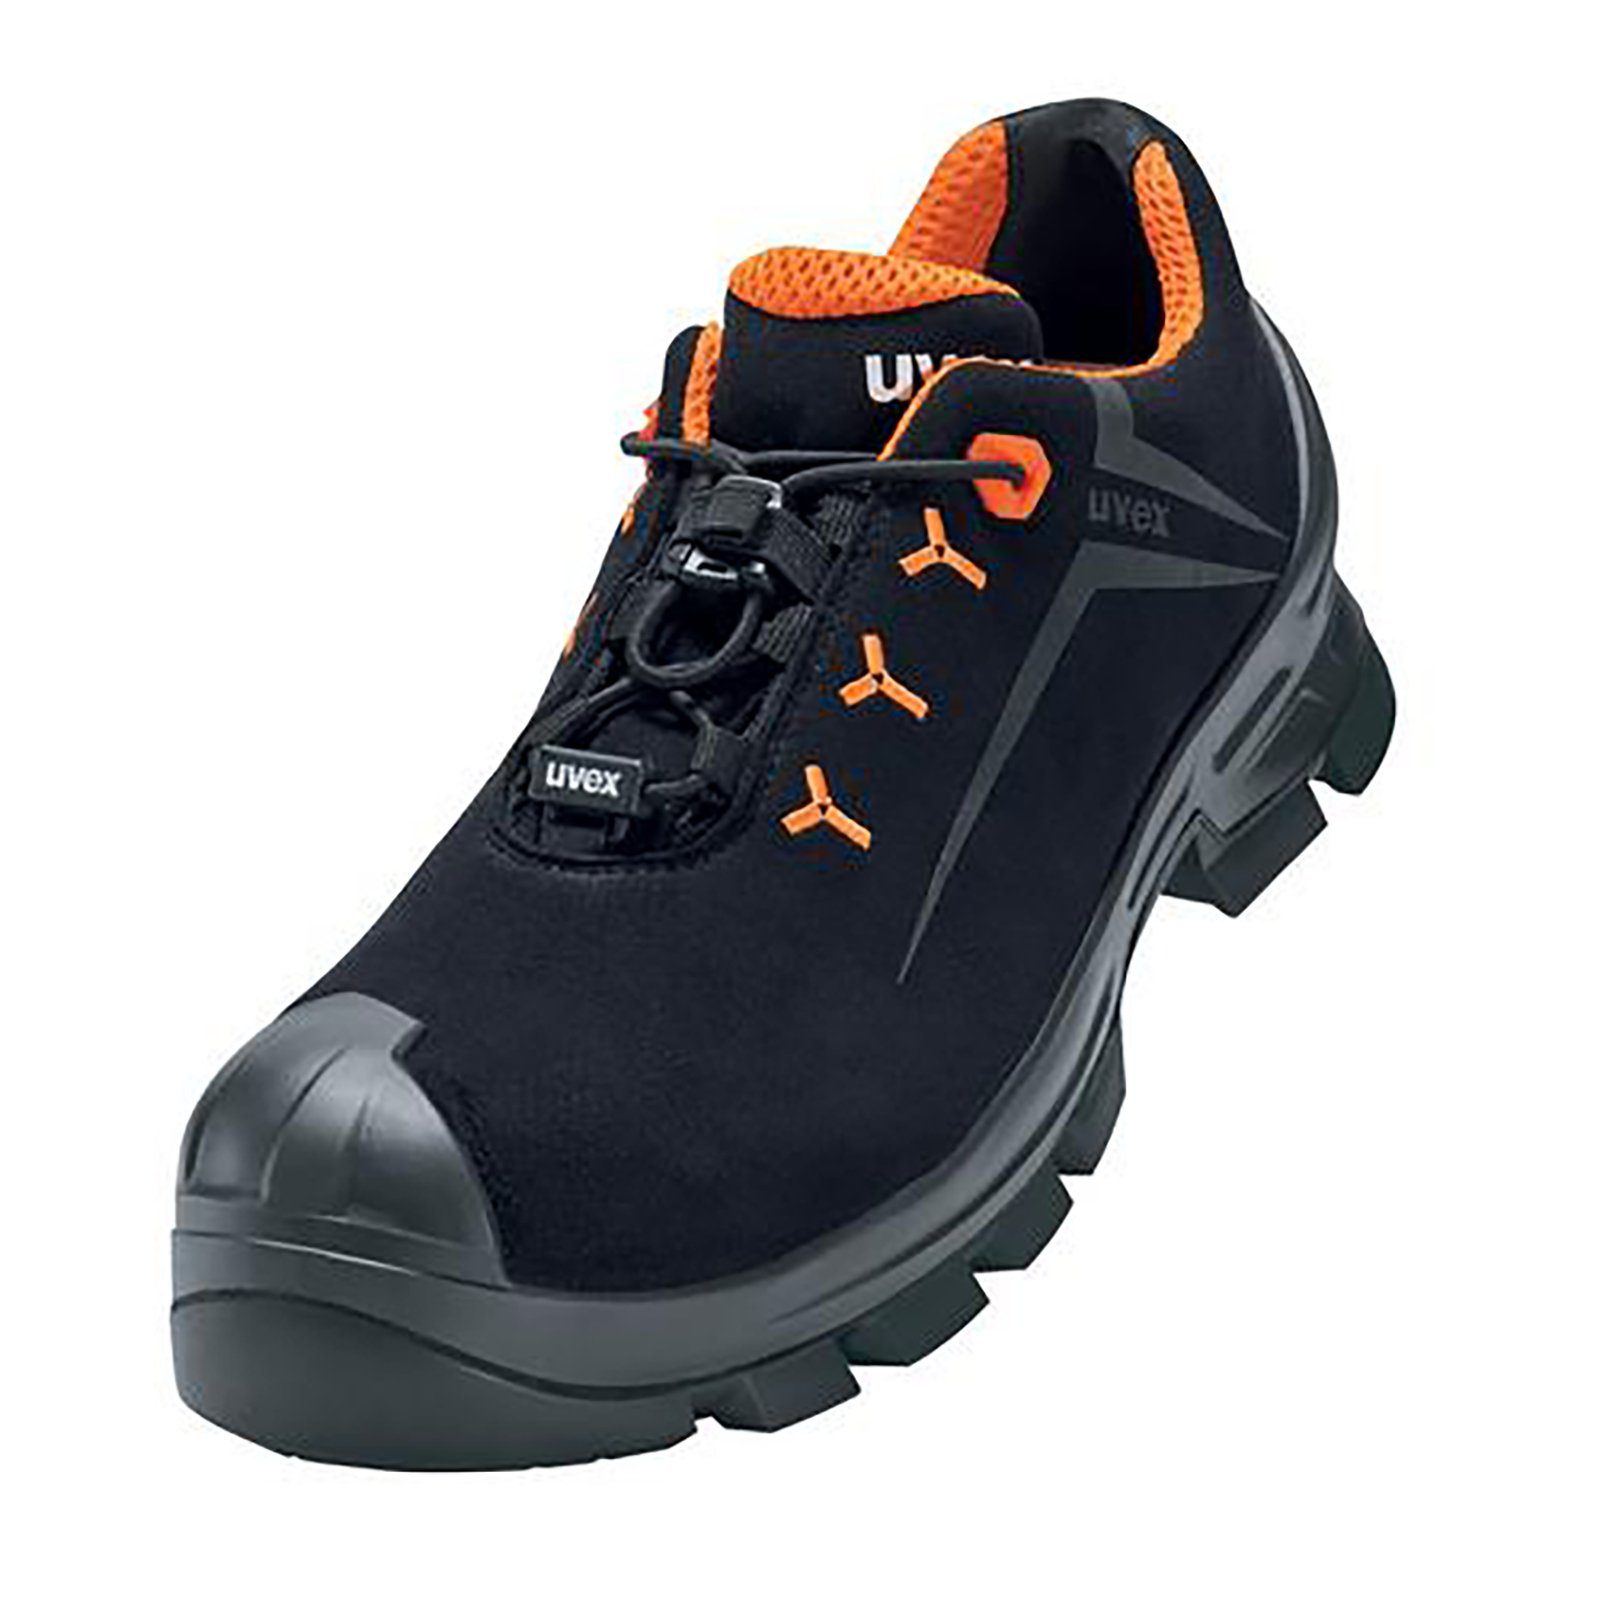 Uvex 2 MACSOLE® Halbschuhe S3 schwarz, orange Weite 10 Sicherheitsschuh